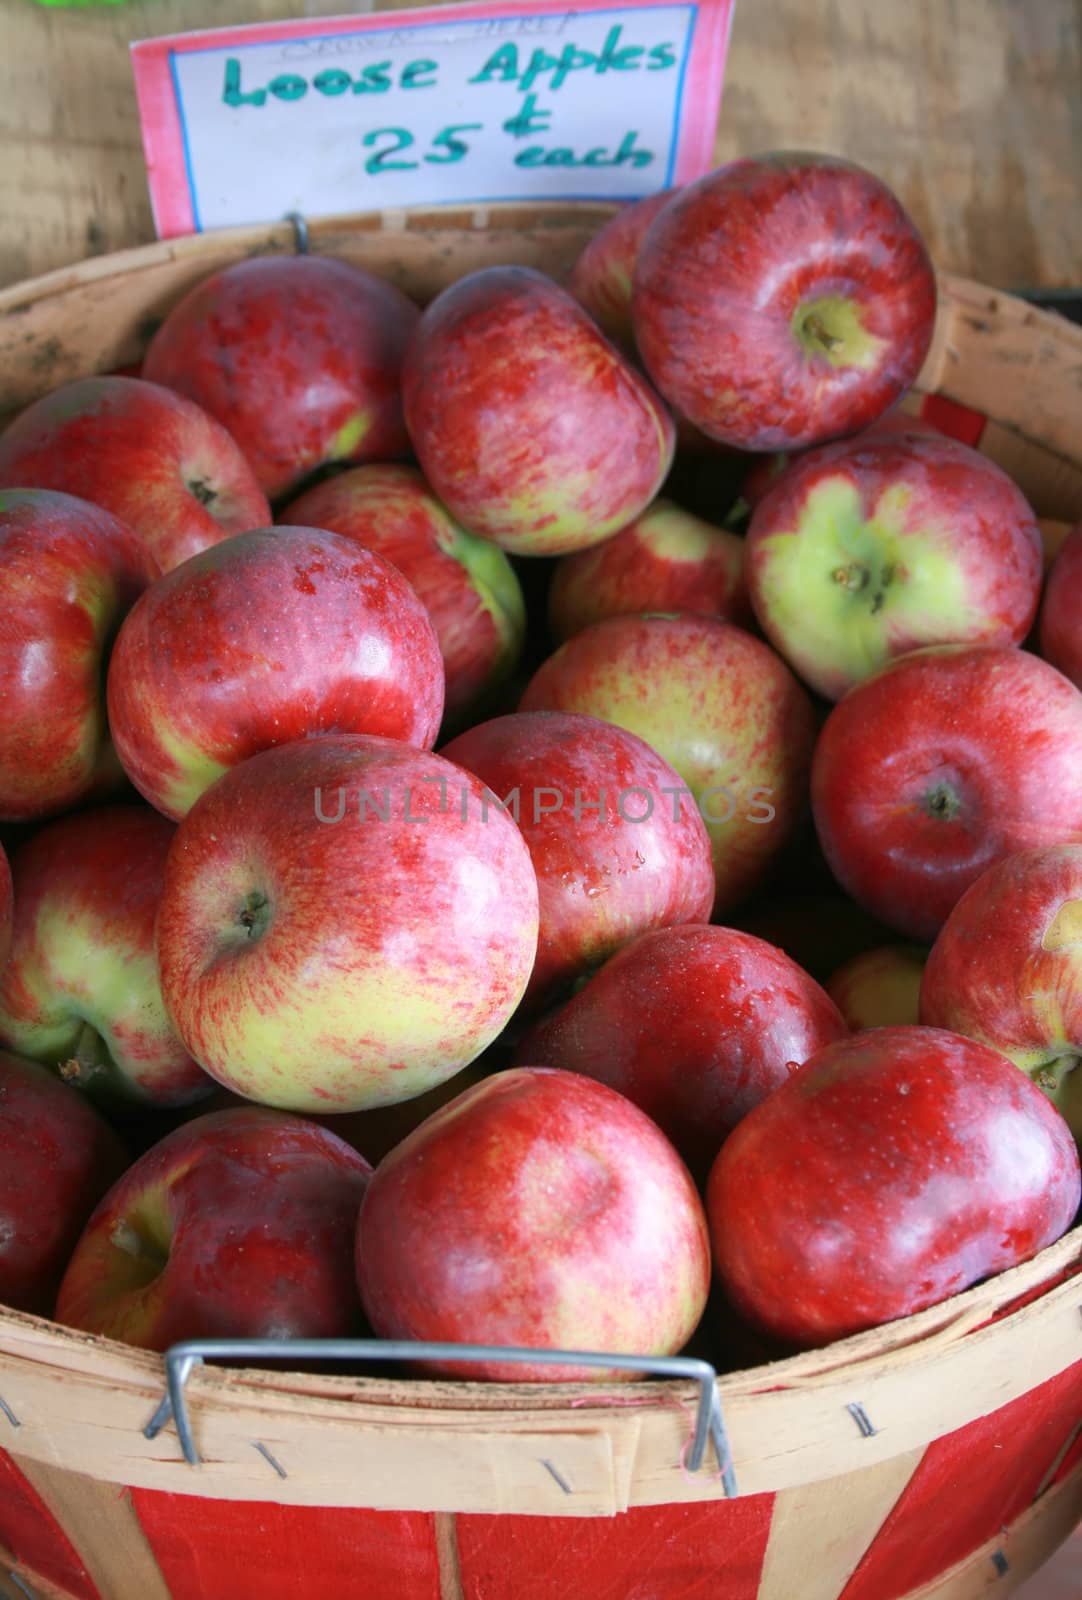 a bushel basket of just-harvested apples for sale